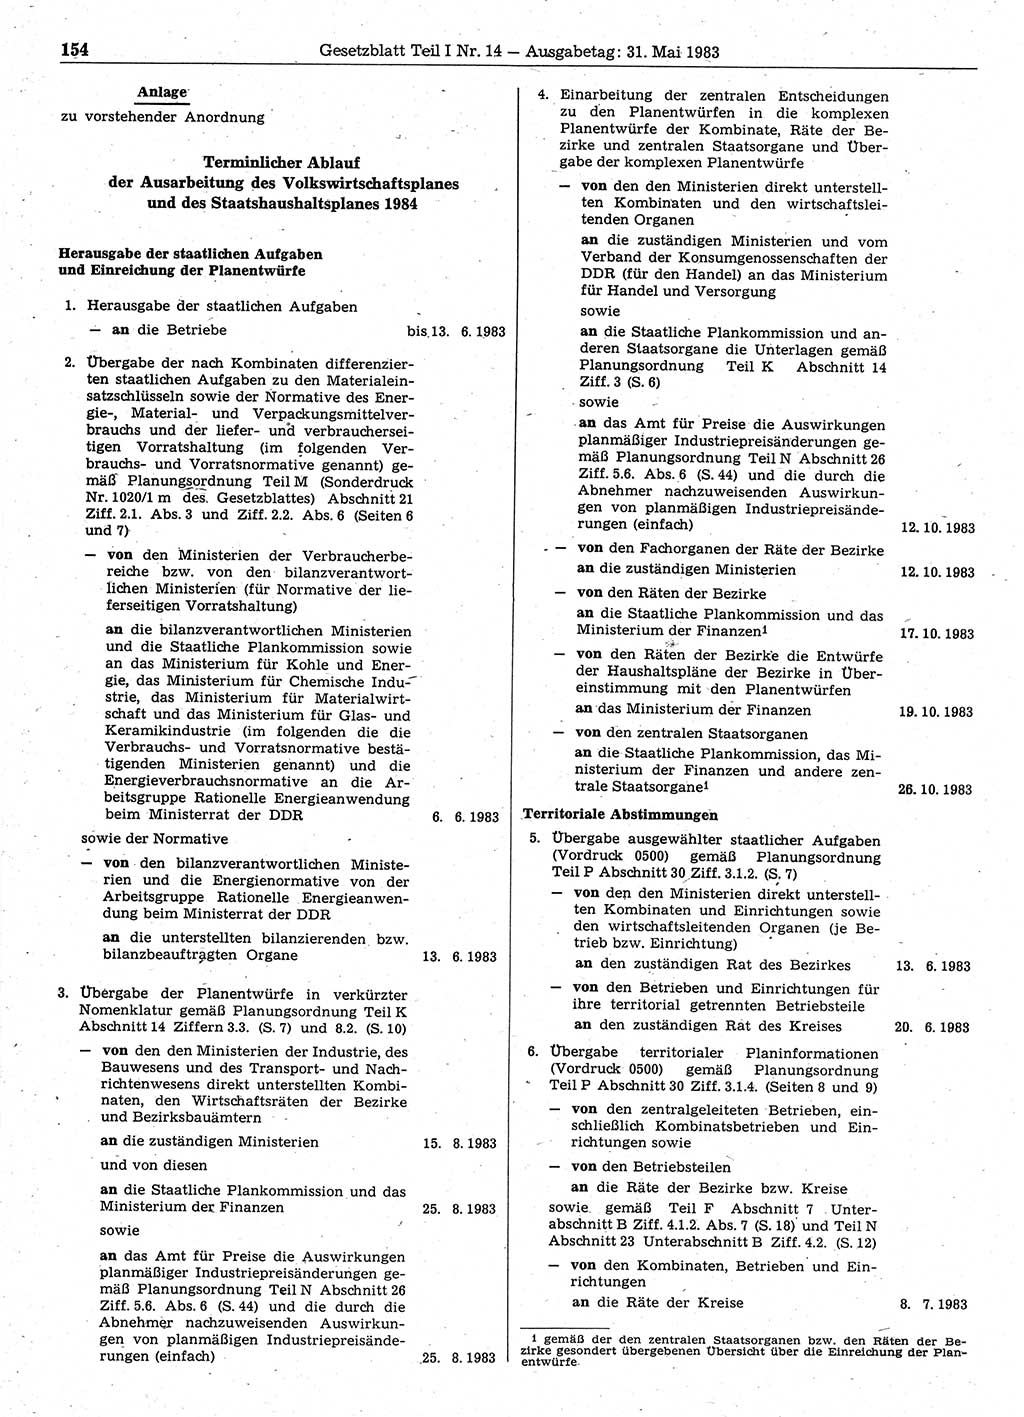 Gesetzblatt (GBl.) der Deutschen Demokratischen Republik (DDR) Teil Ⅰ 1983, Seite 154 (GBl. DDR Ⅰ 1983, S. 154)